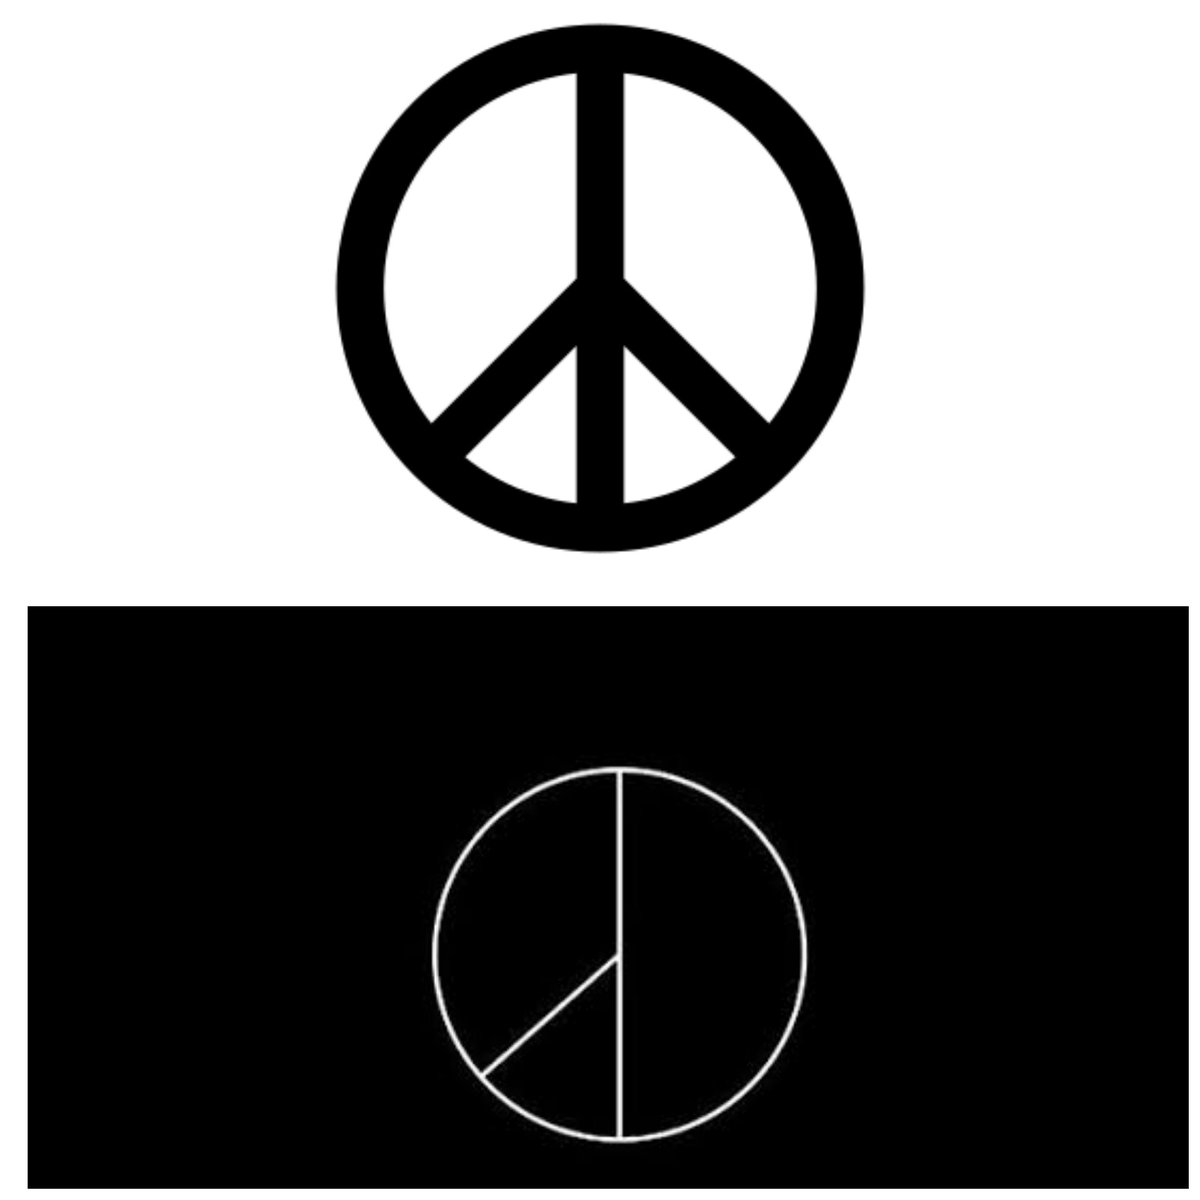 nah masih inget simbol peace tadi kan? yang atas simbol peace yang bawah logo peaceminusone. kira kira bedanya dimana gengs?